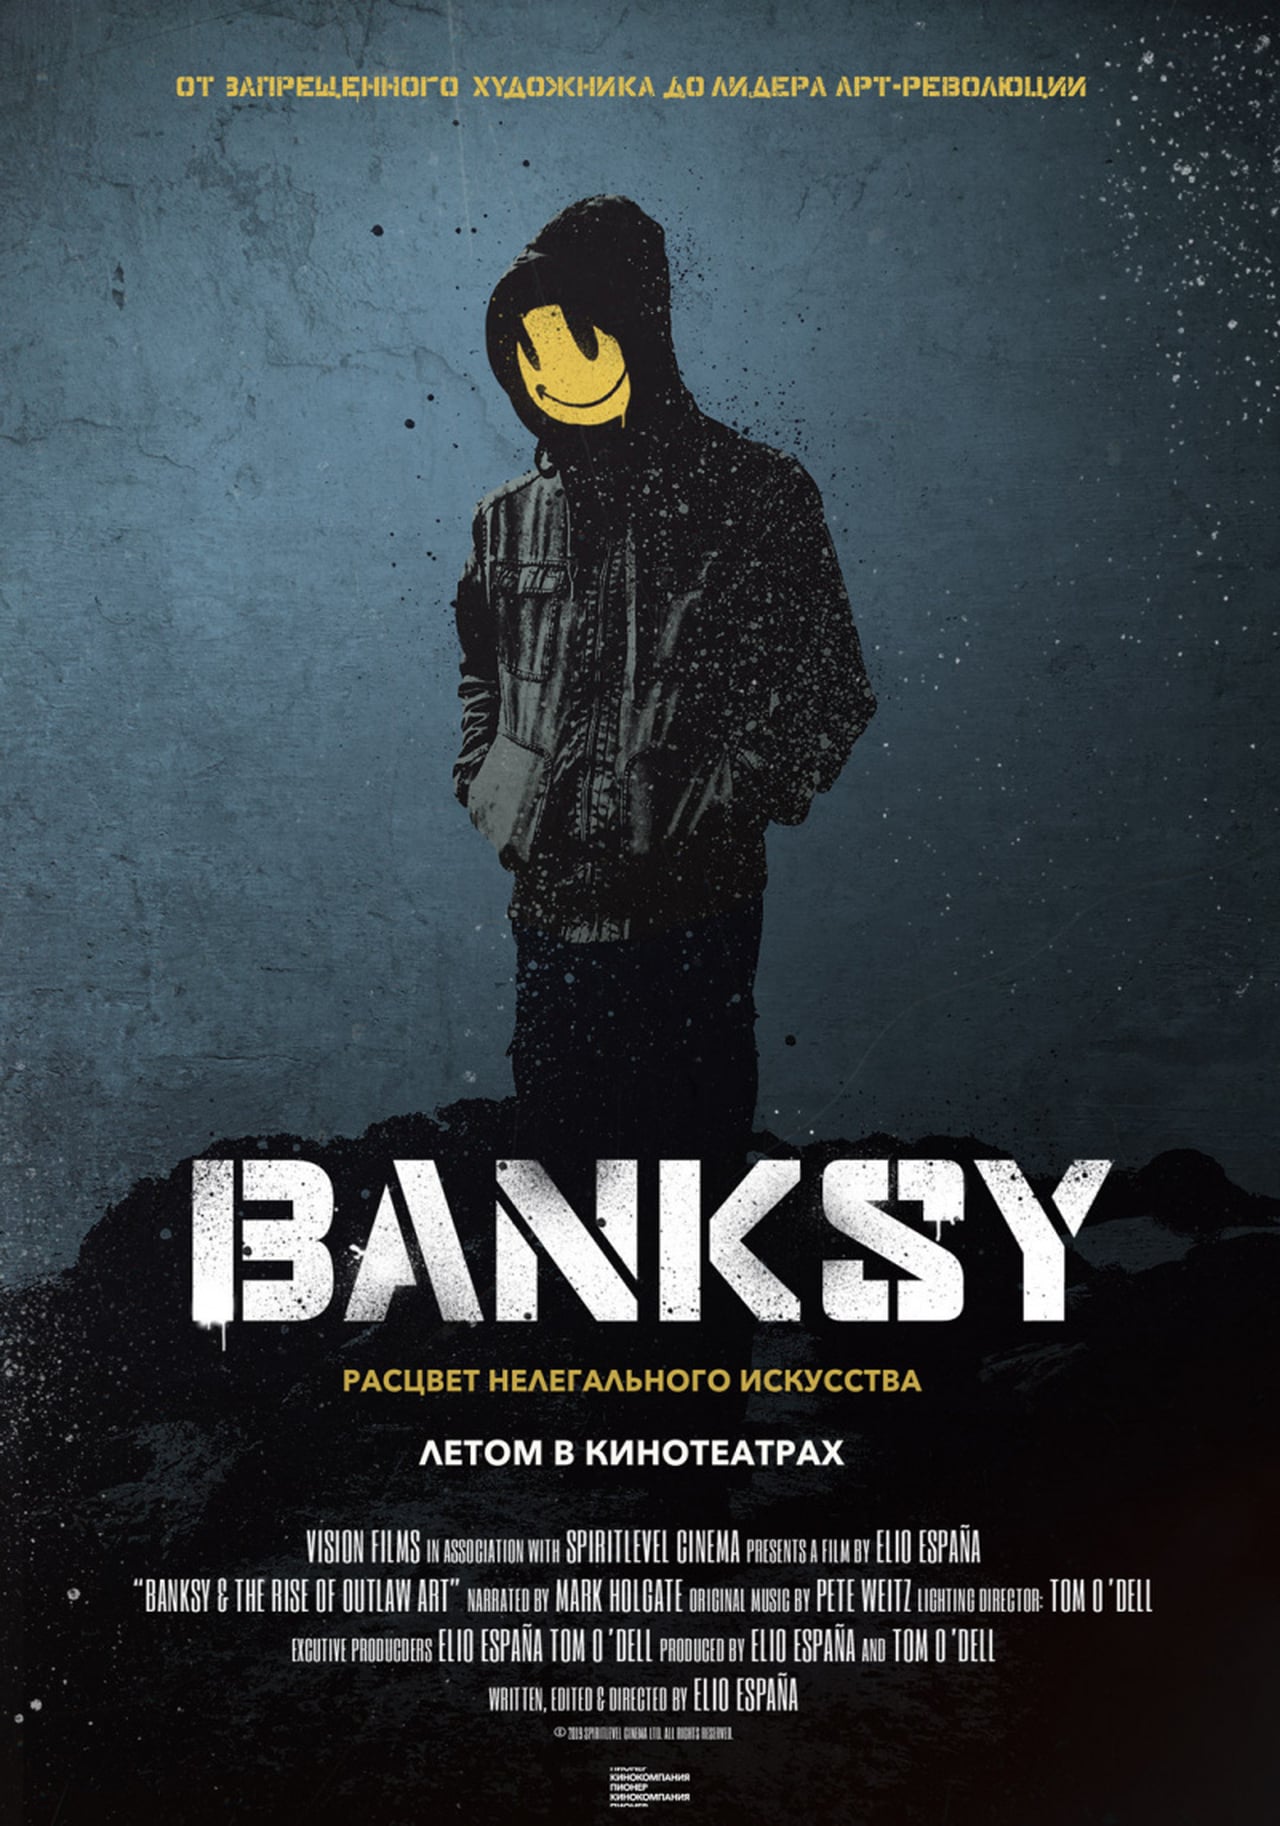 Кинопоказ: Banksy. Расцвет нелегального искусства